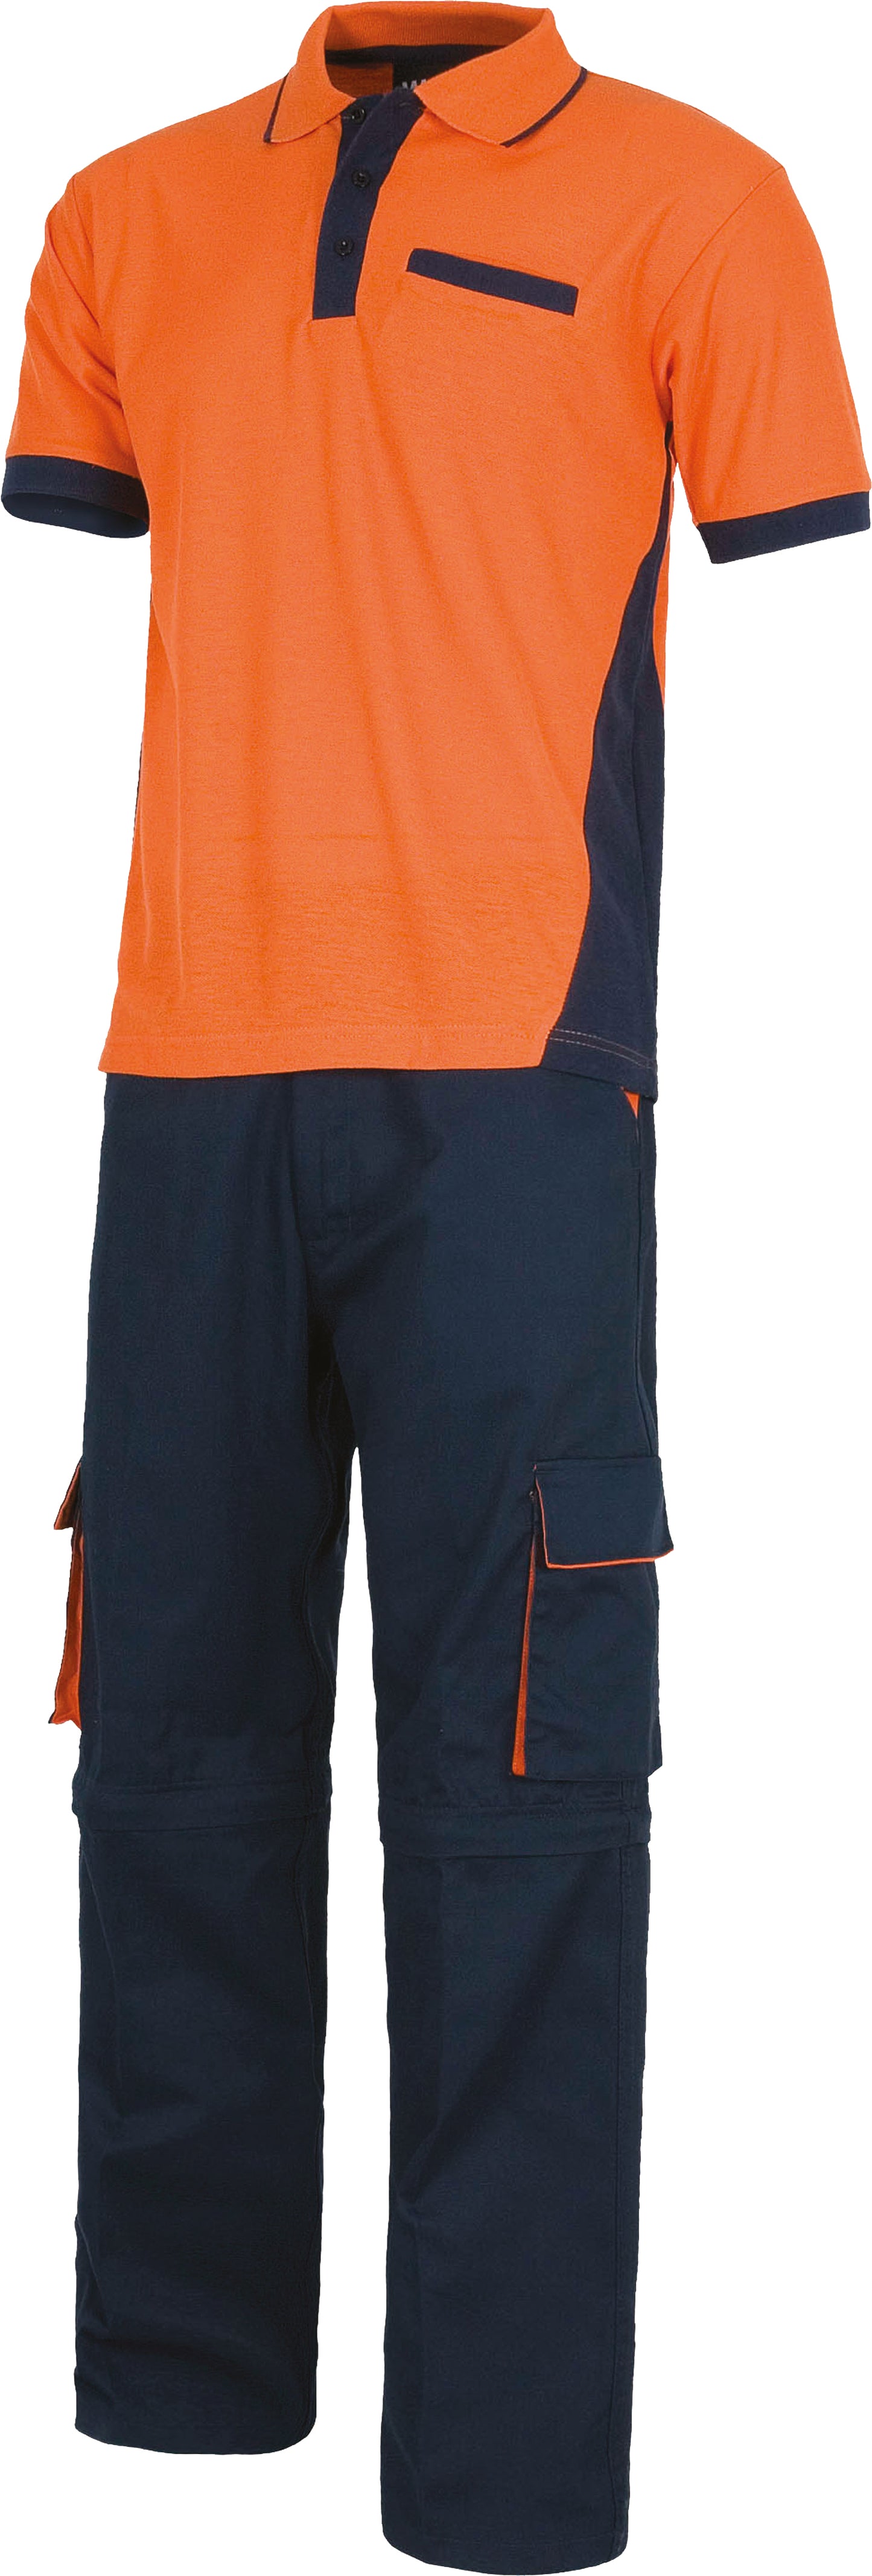 Kit personalizzato Pantalone, Polo e Guanti | Cod. WSET1465